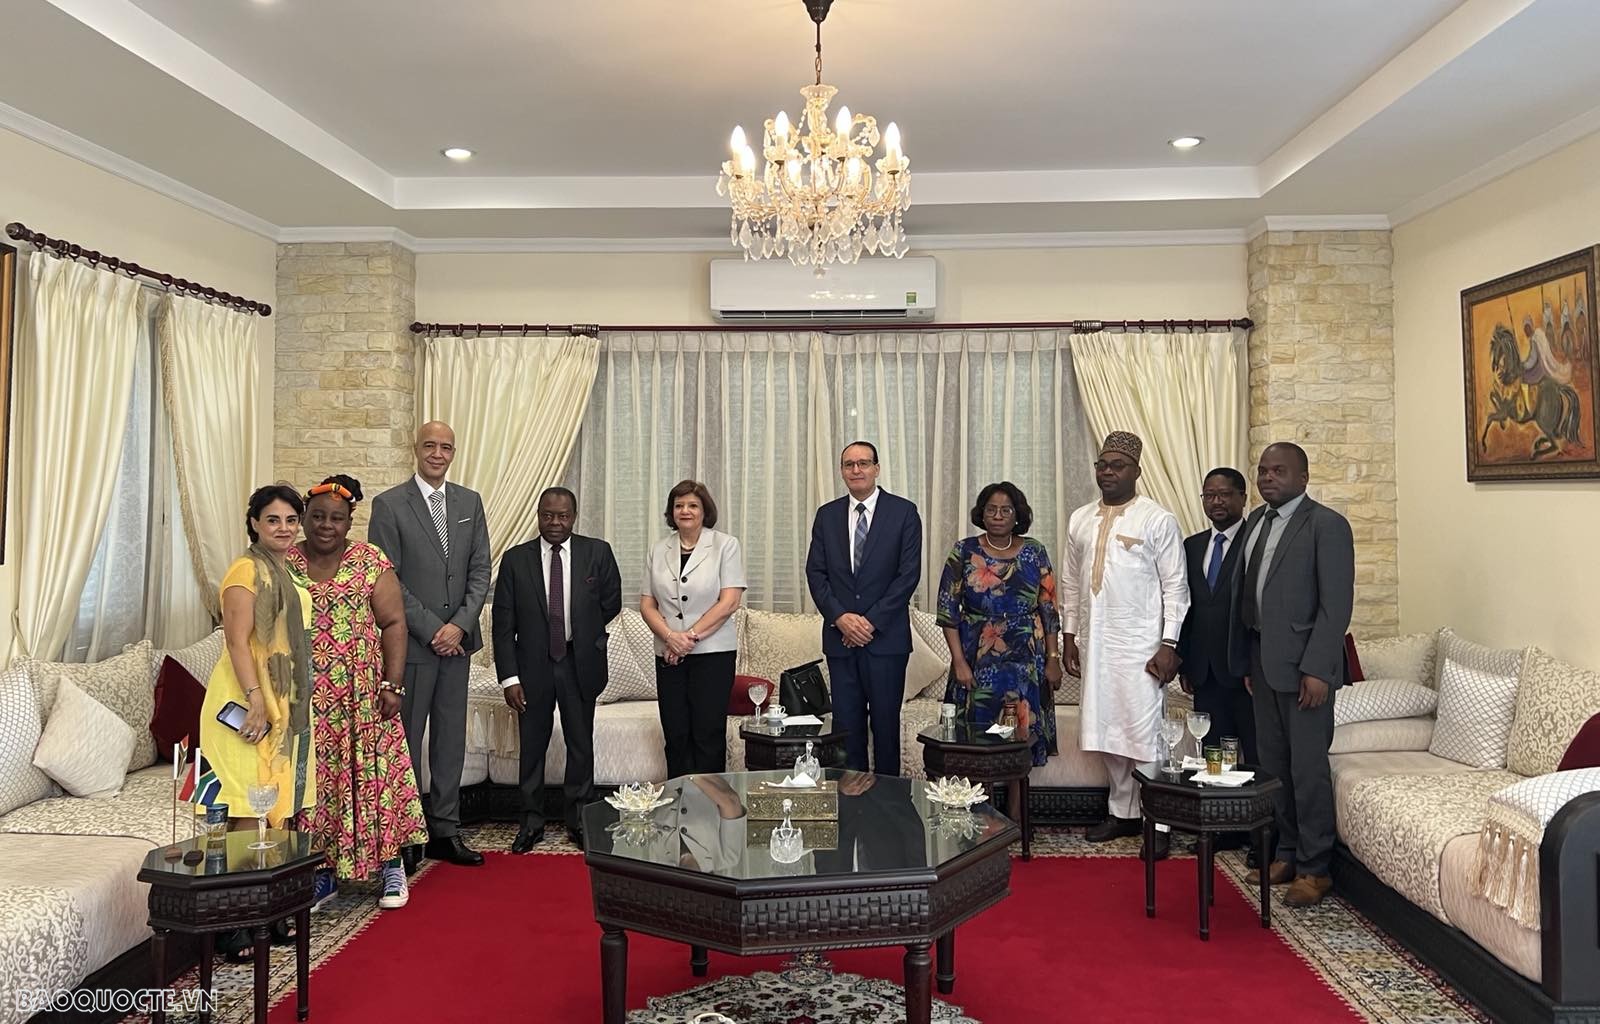 Họp báo thông báo về Lễ kỷ niệm Ngày châu Phi tại Hà Nội với sự tham dự của đại diện Đại sứ quán các nước châu Phi tại Hà Nội. (Ảnh: Thu Trang)